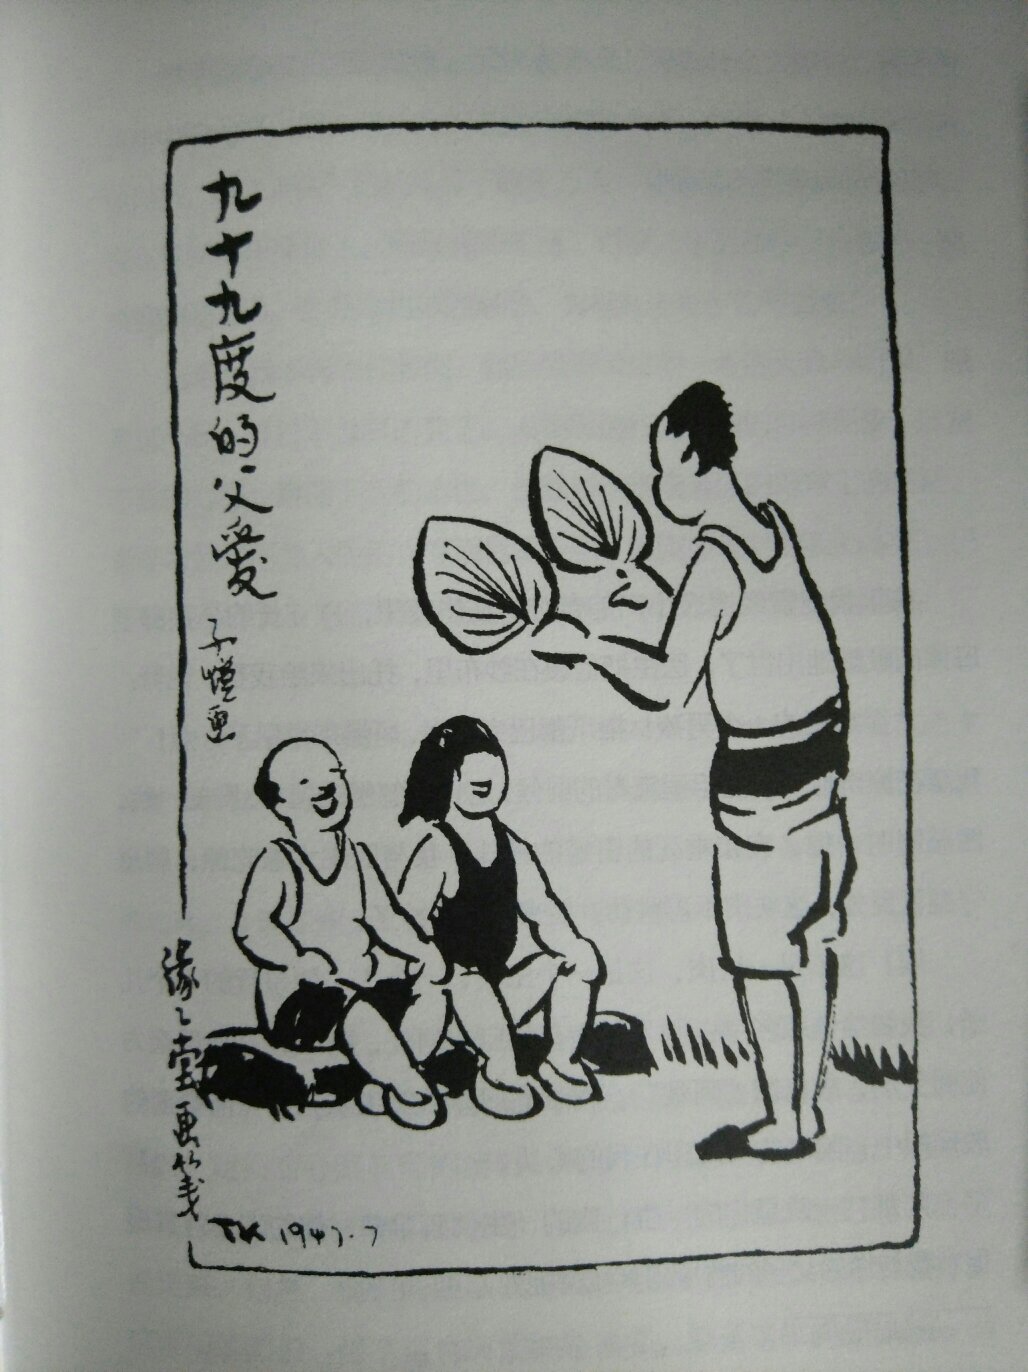 装帧很美，字体好看，彩漫超贊，不愧是近代中国漫画开山鼻祖！